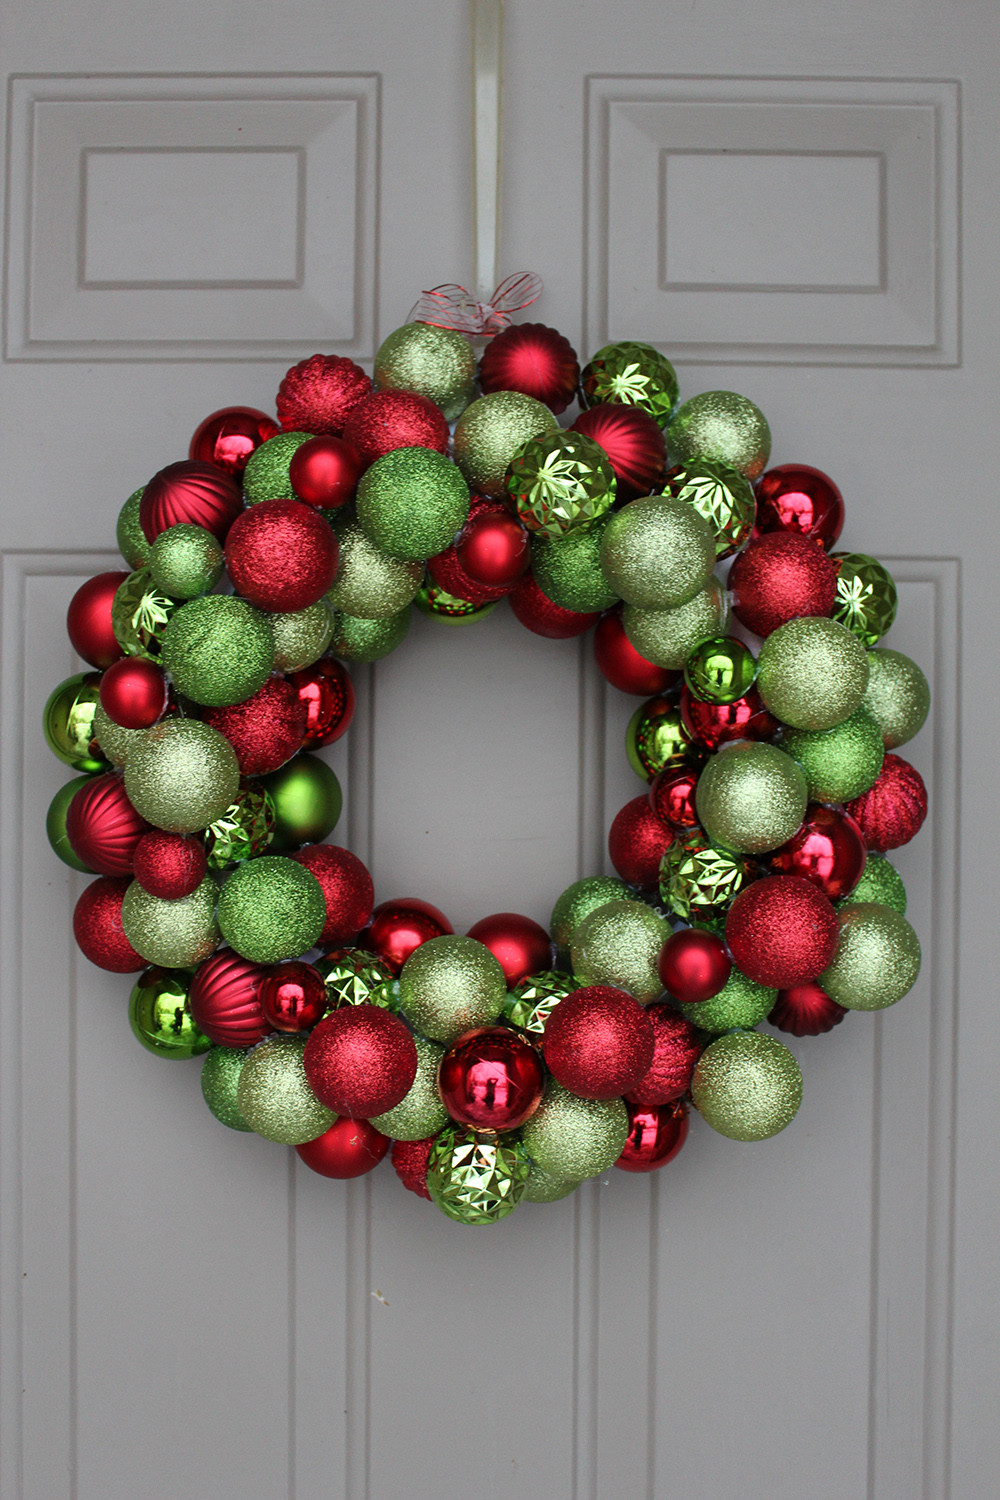 DIY Christmas Ornament Wreath
 DIY Ornament Wreath under $30